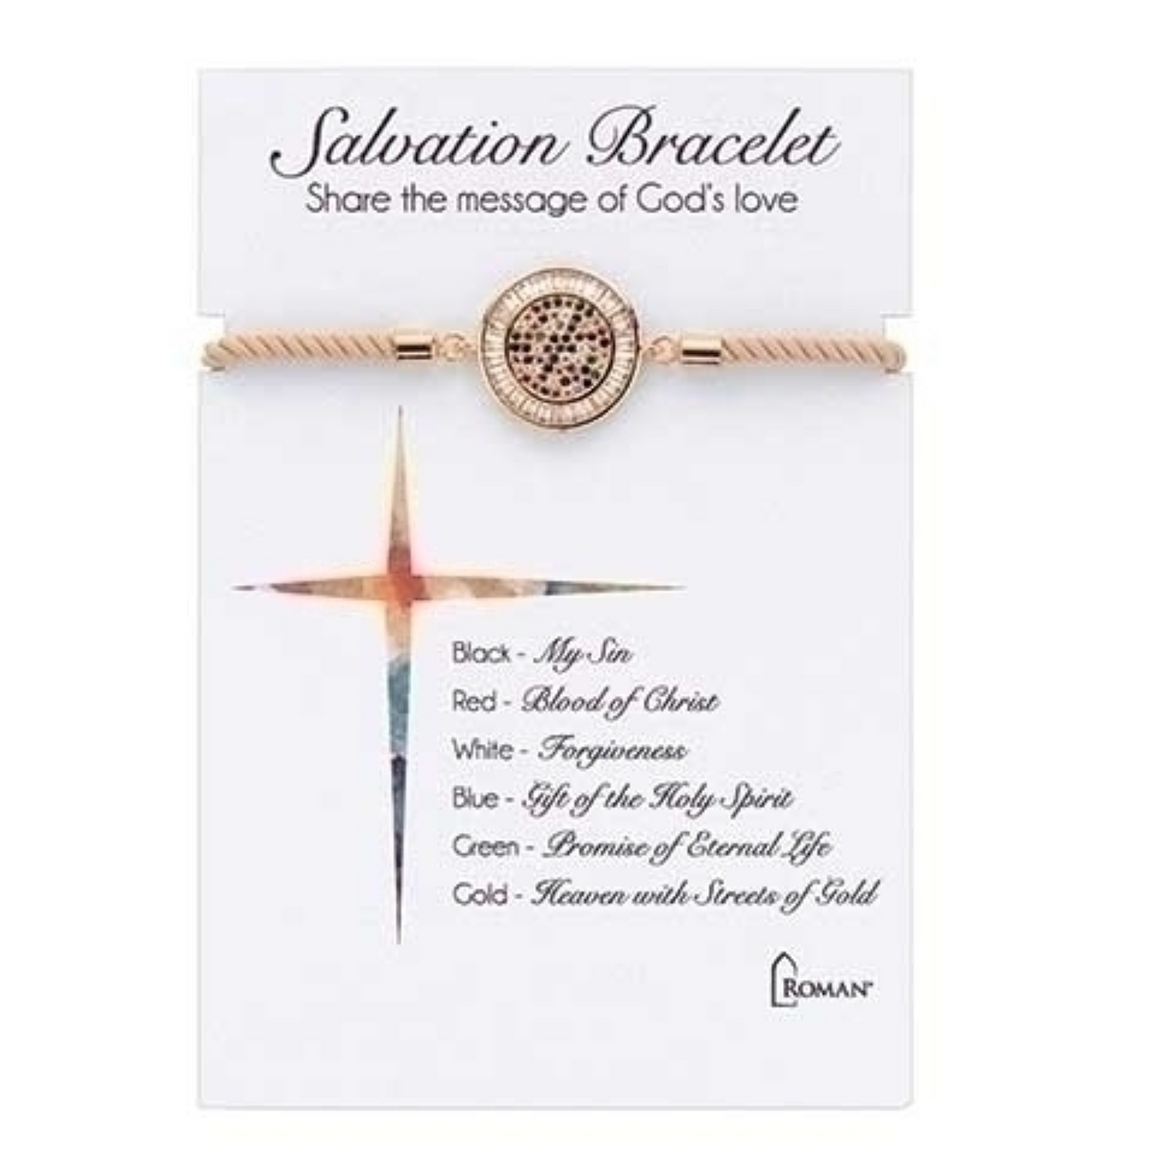 Round Salvation Bracelet Gold; Adjustable 7"L - Carded